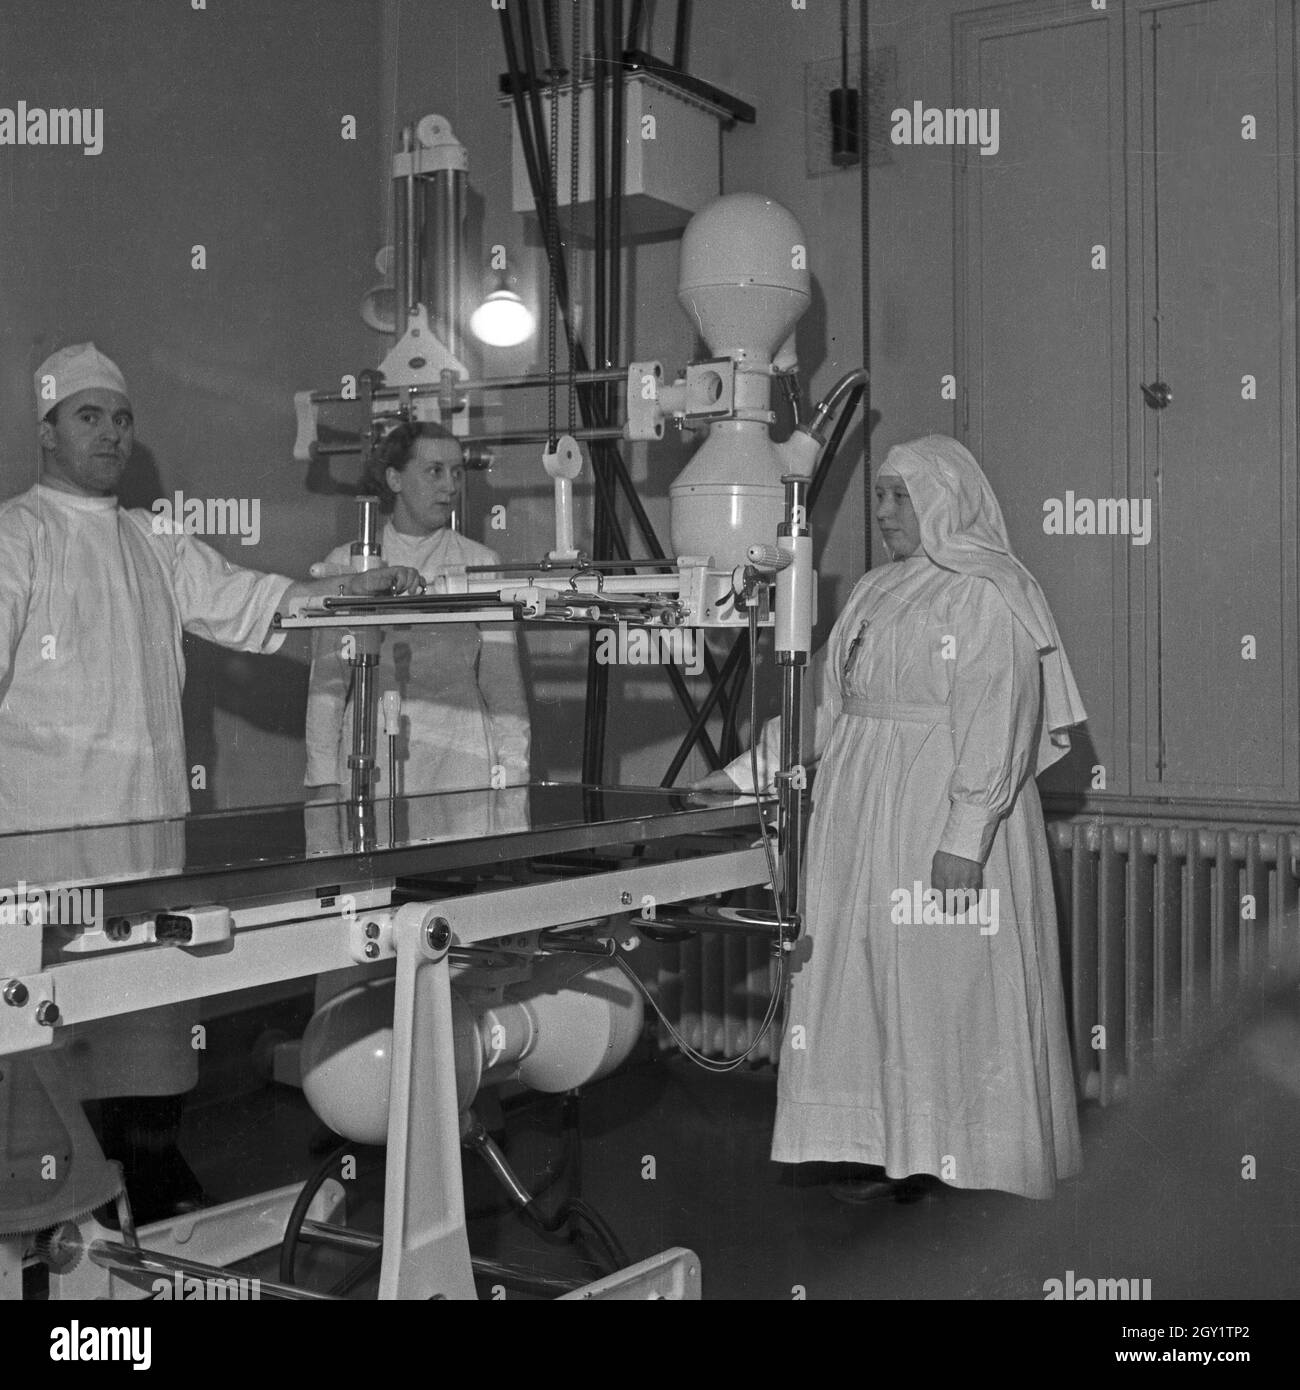 Das Team in einem Krankenhaus, Deutschland 1930er Jahre. Team at a hospital, Germany 1930s. Stock Photo